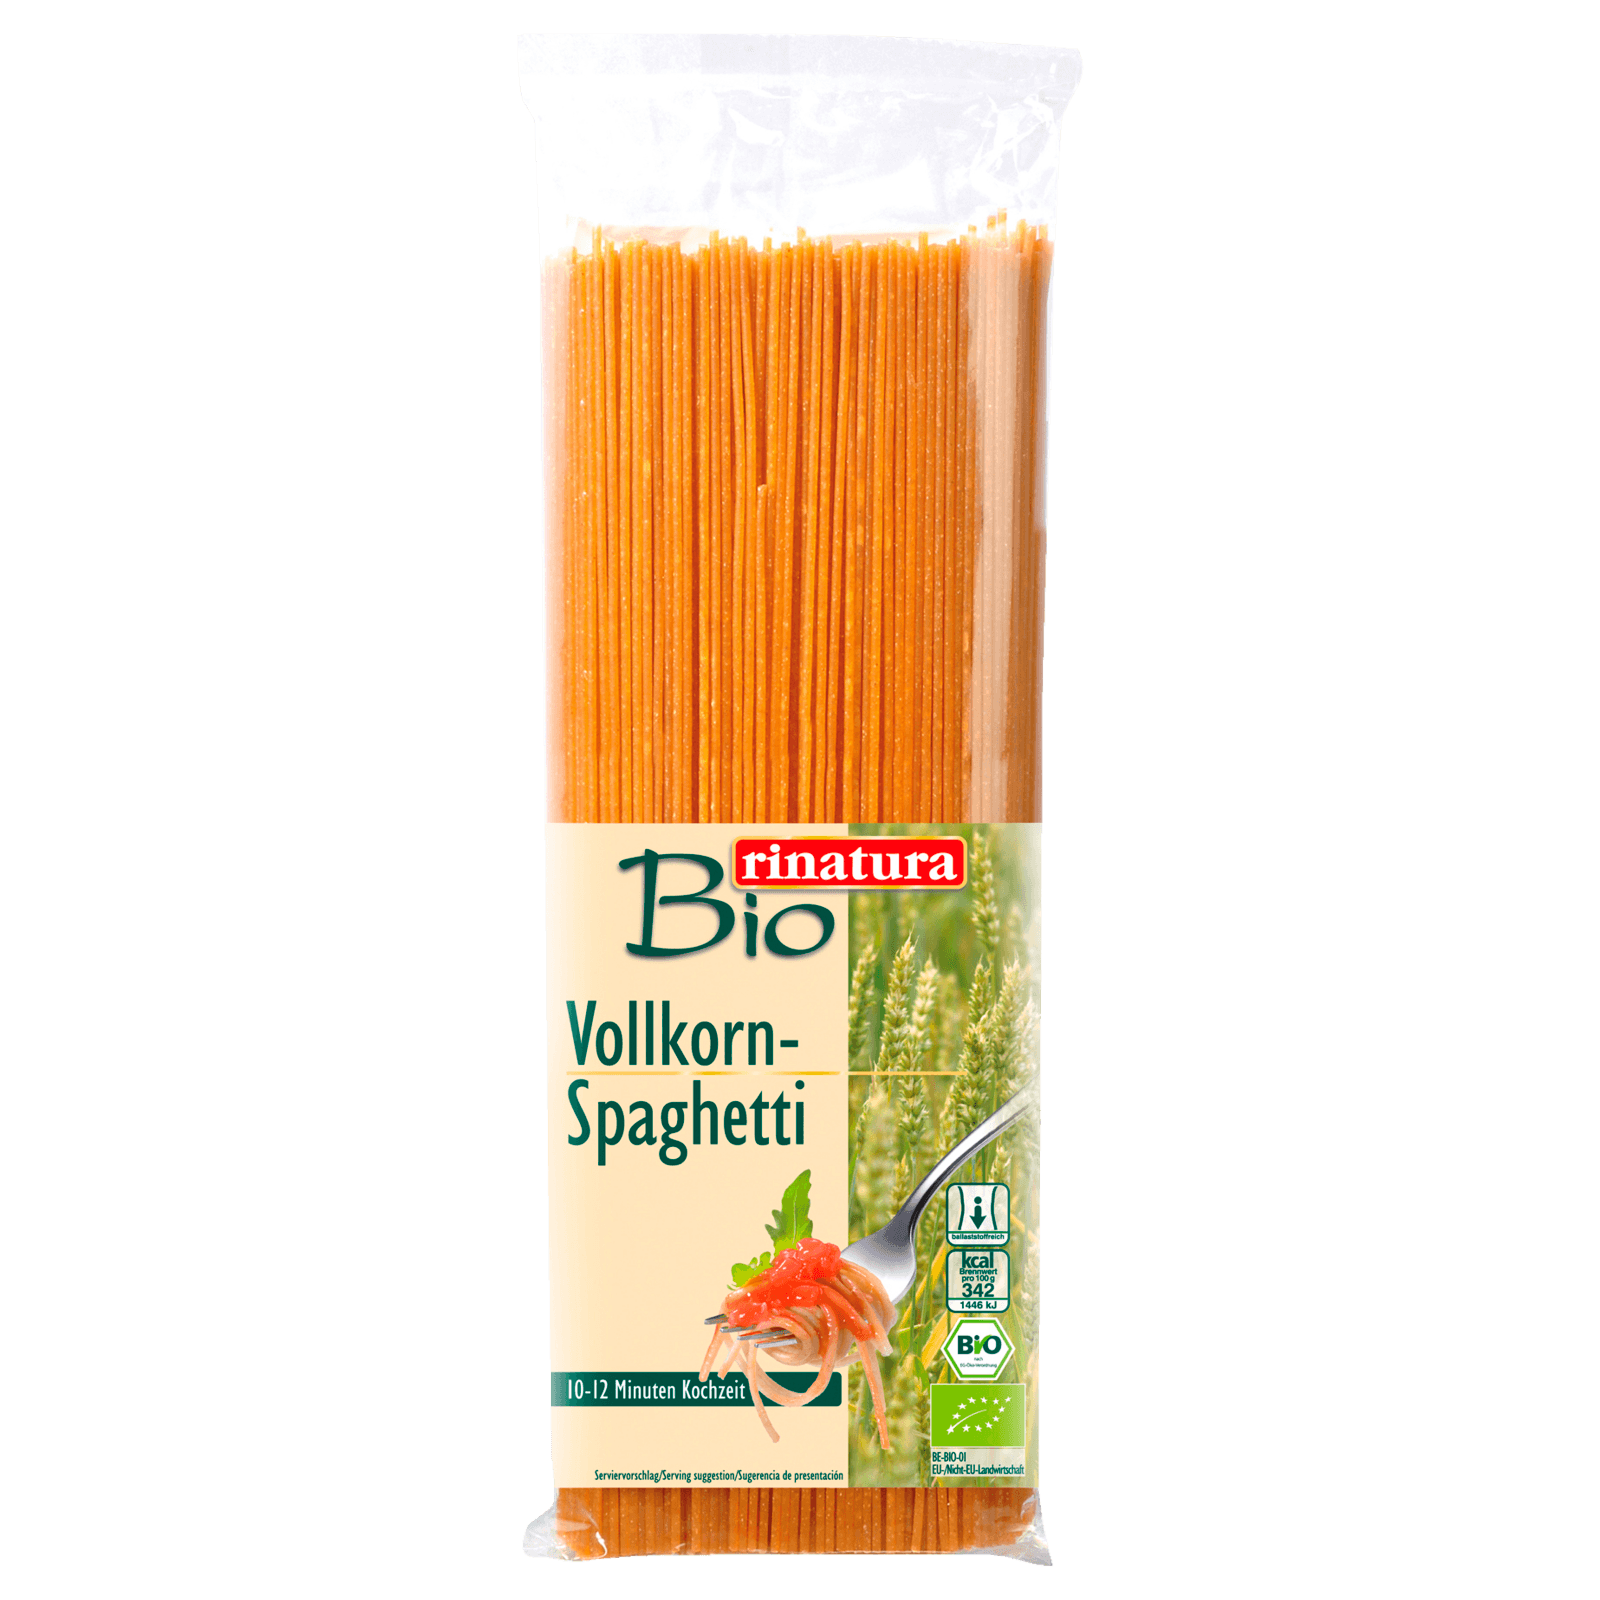 Rinatura Bio Vollkorn Spaghetti 500g Bei Rewe Online Bestellen